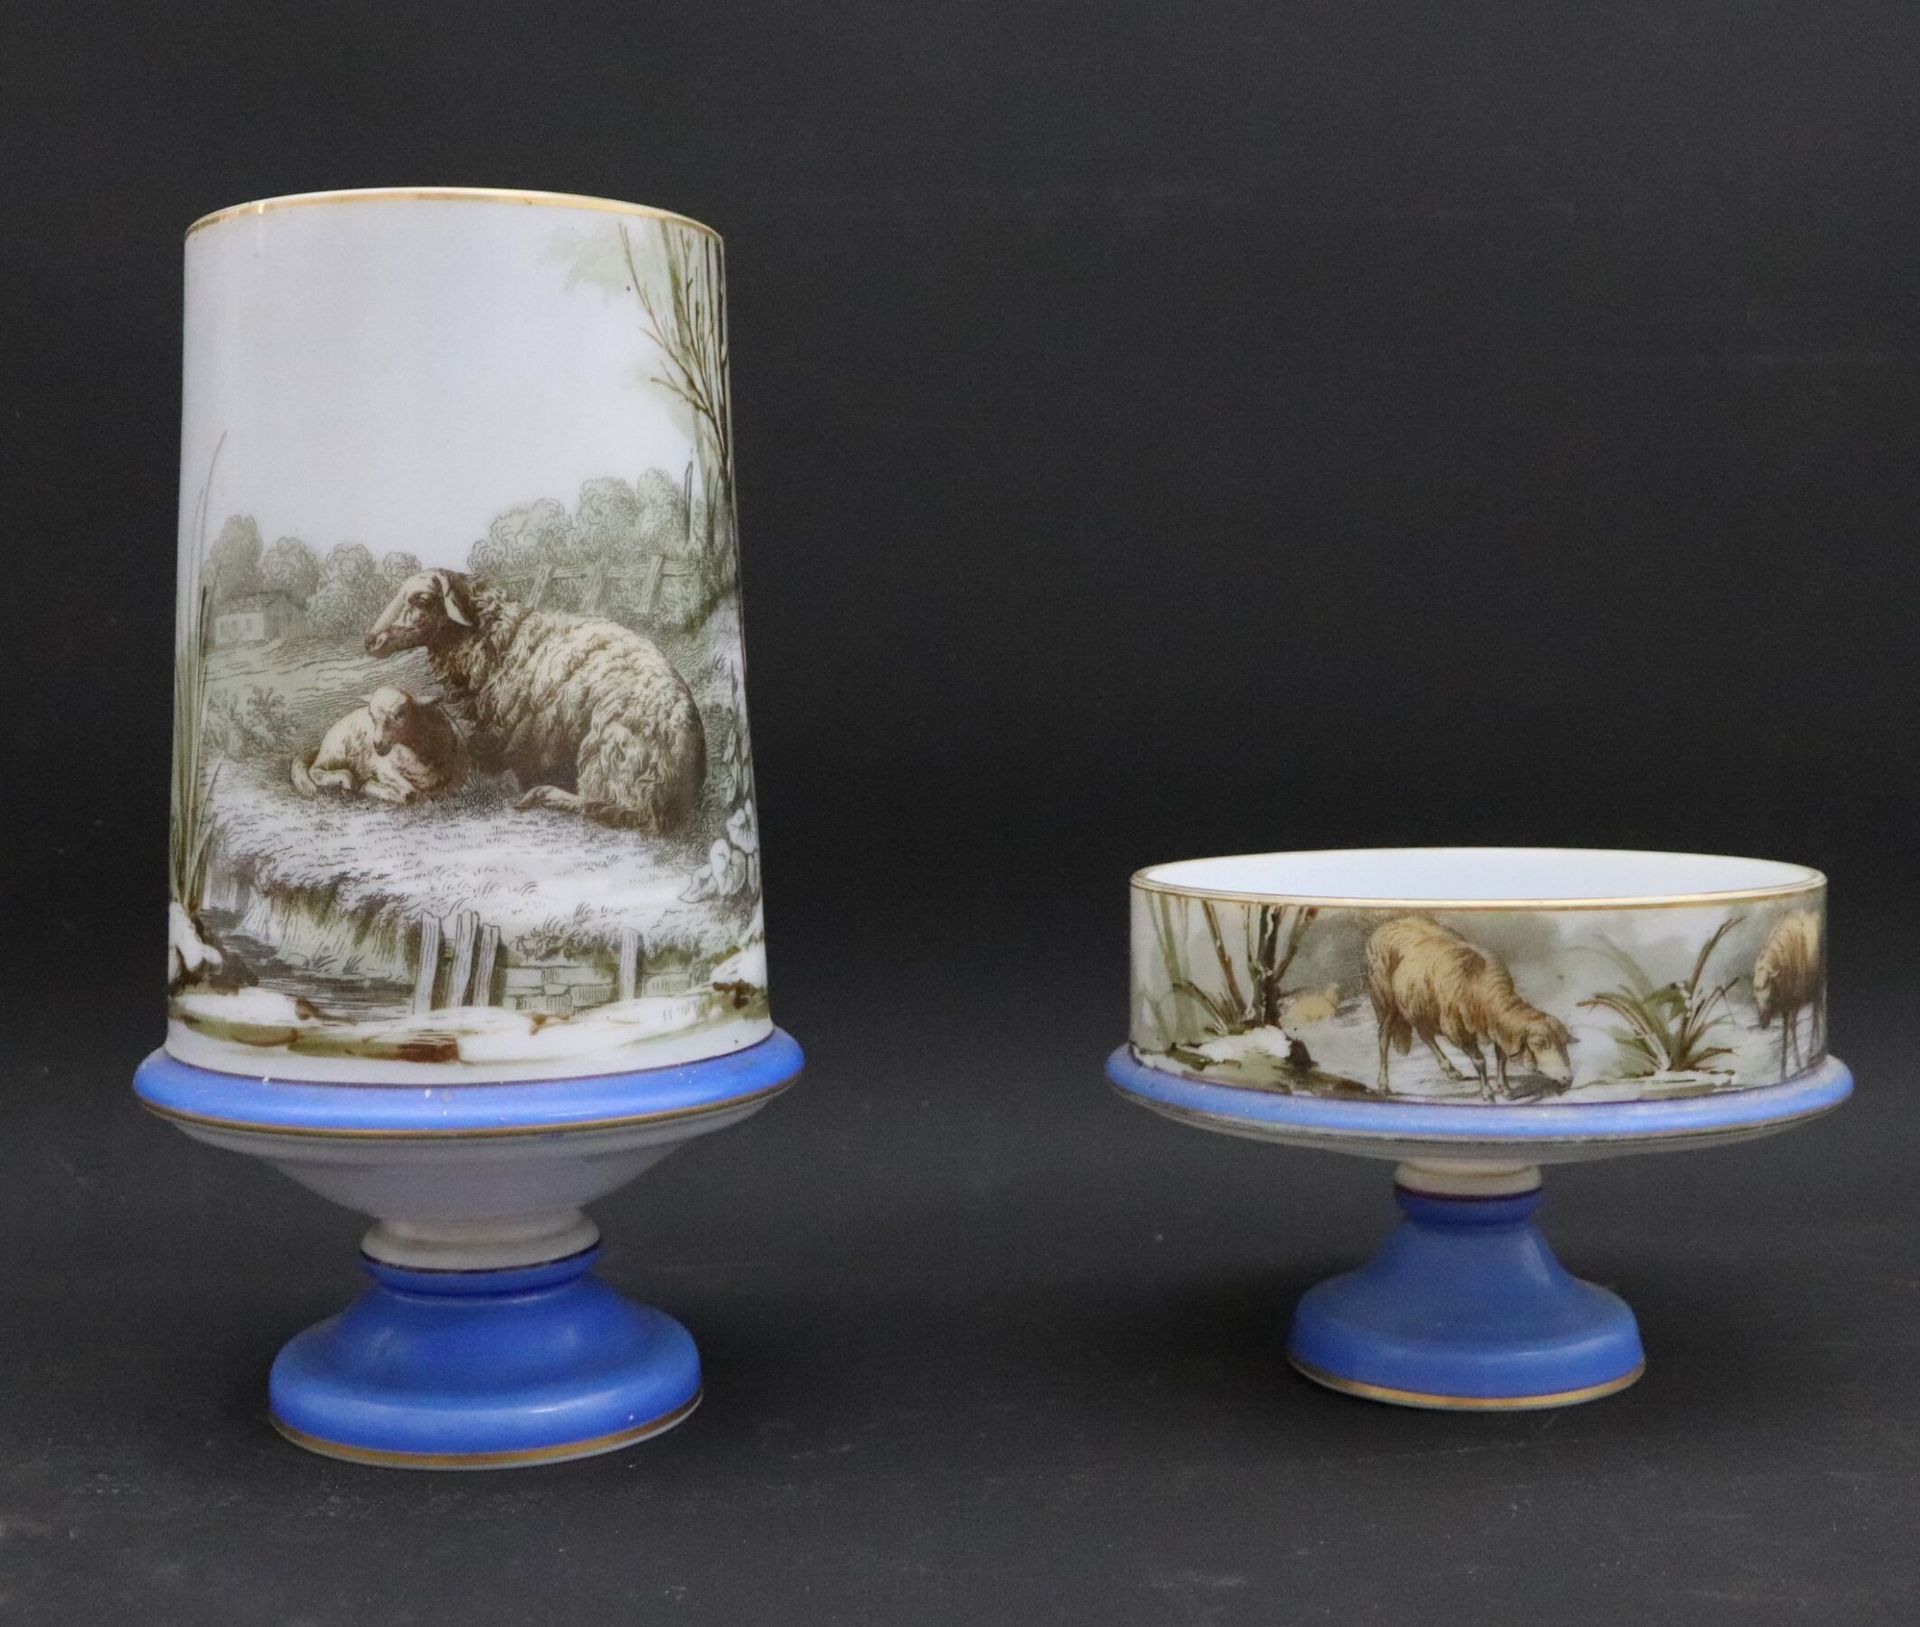 Null 乳白玻璃碗和花瓶，底座上有彩绘装饰，描绘了冬季风景中的羊群。
拿破仑三世时期。
高_25,2厘米（花瓶）高_11,1厘米（碗）。